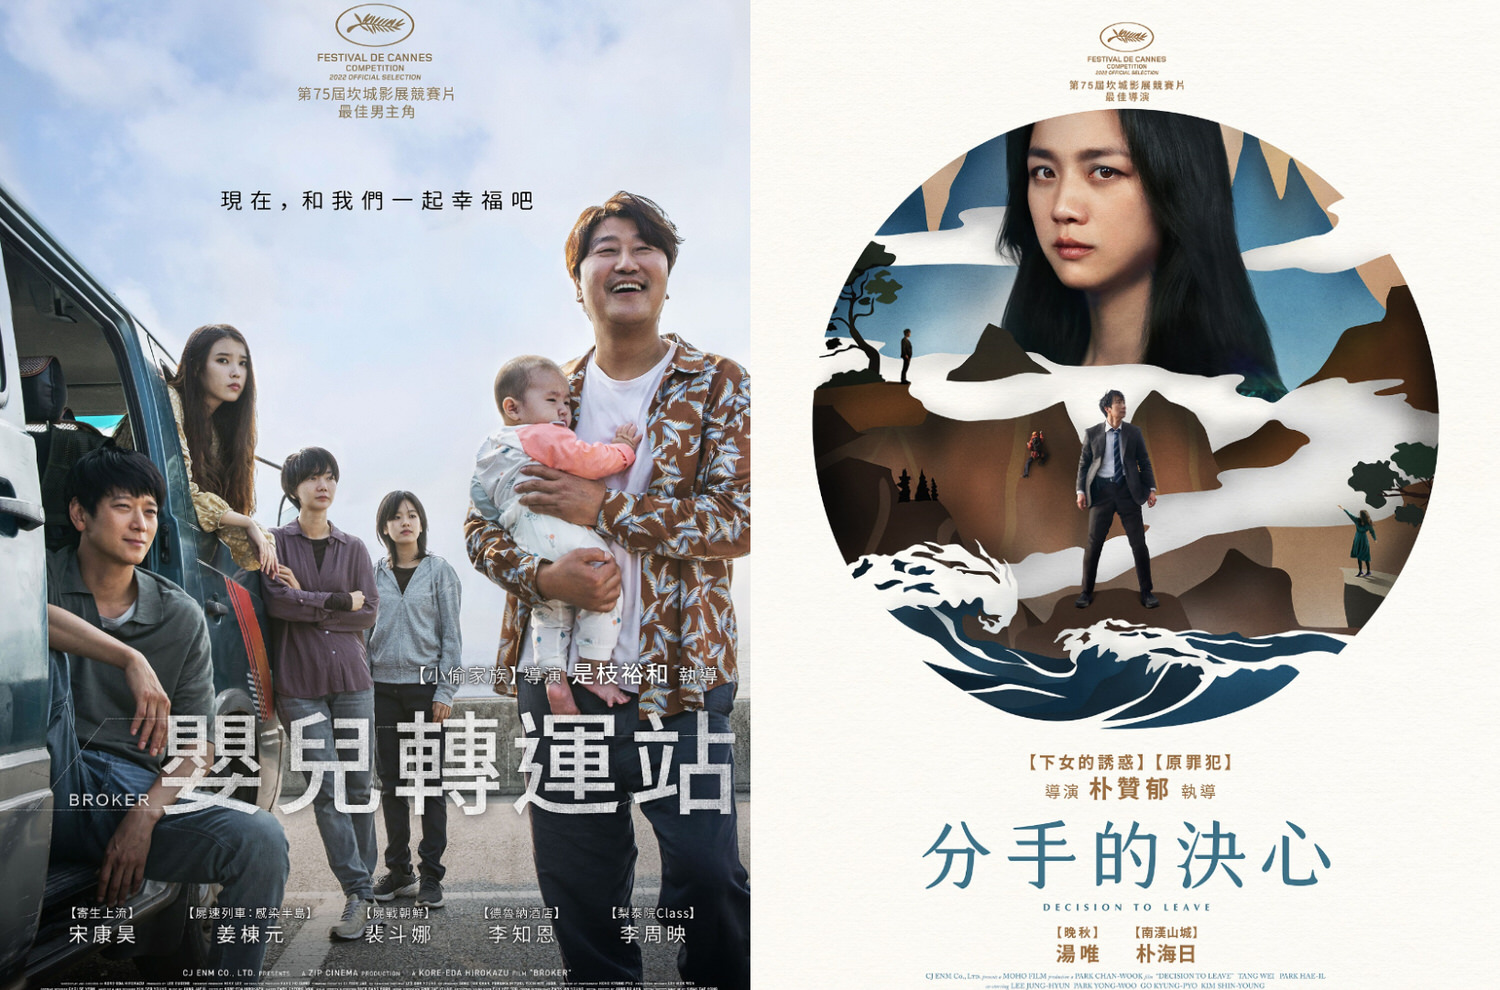 韓國電影《嬰兒轉運站》&《分手的決心》在坎城書雙拿下大獎